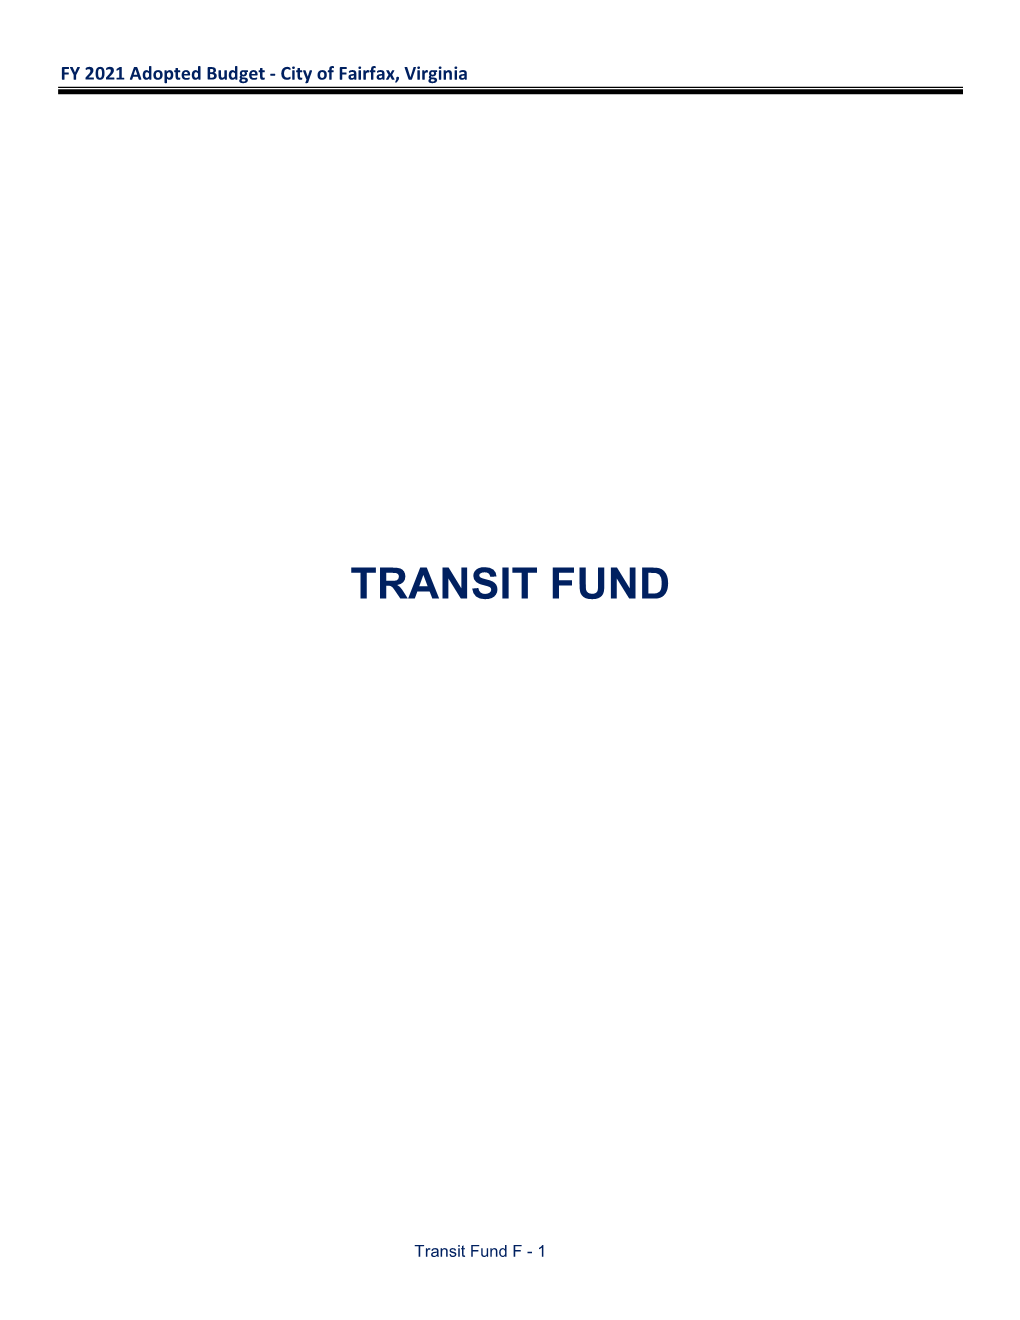 Transit Fund